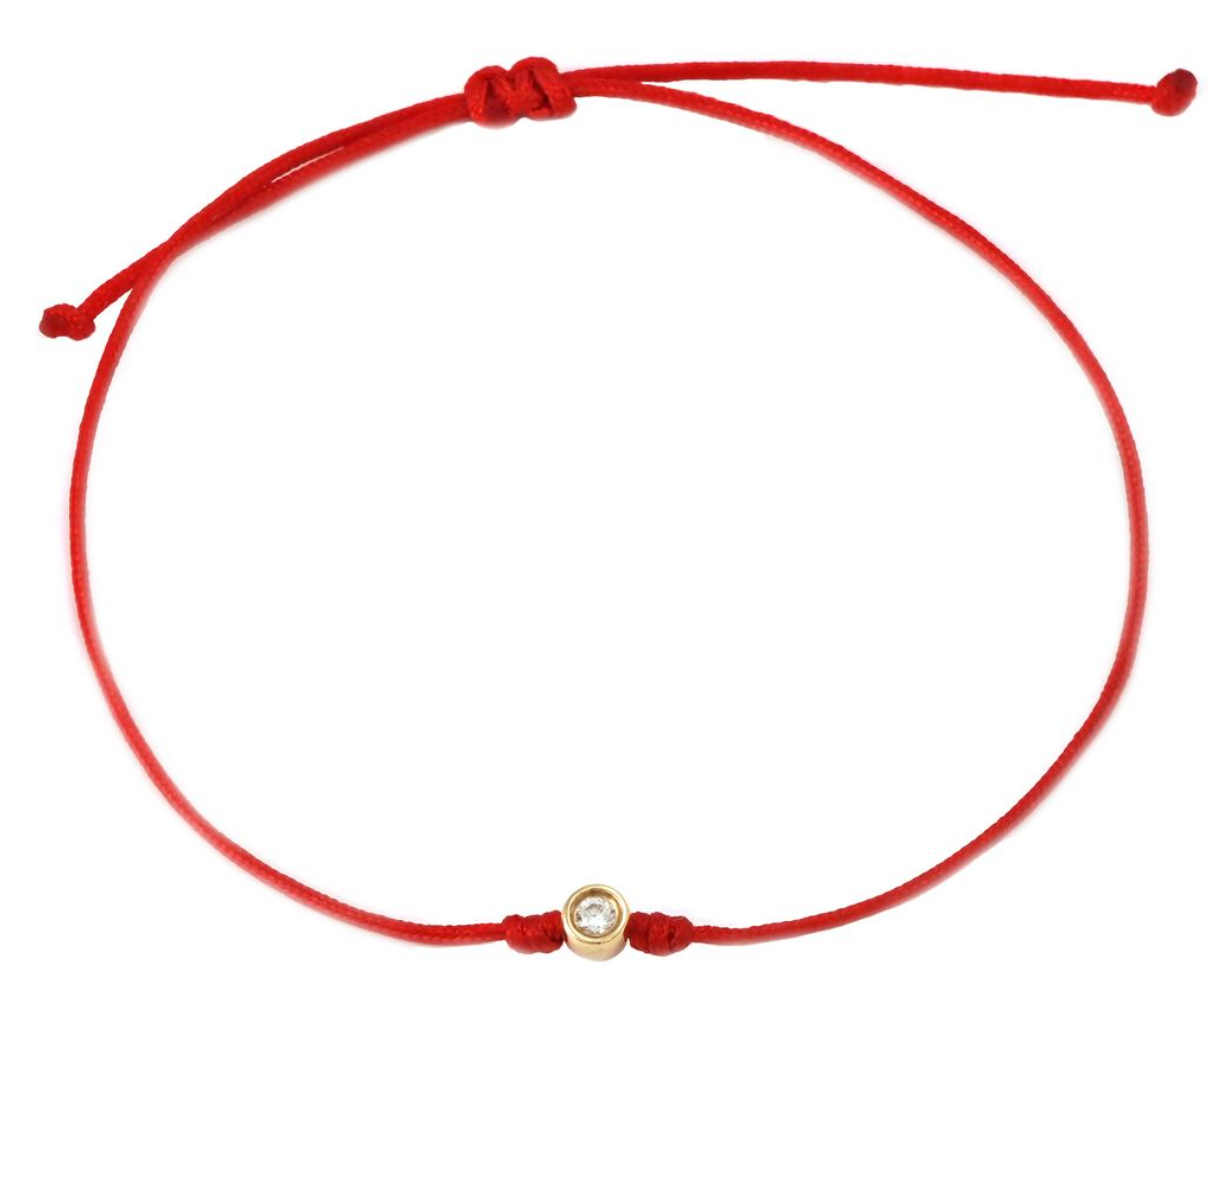 Bracelet on Red Cord. Bezel Set Diamond - 14k